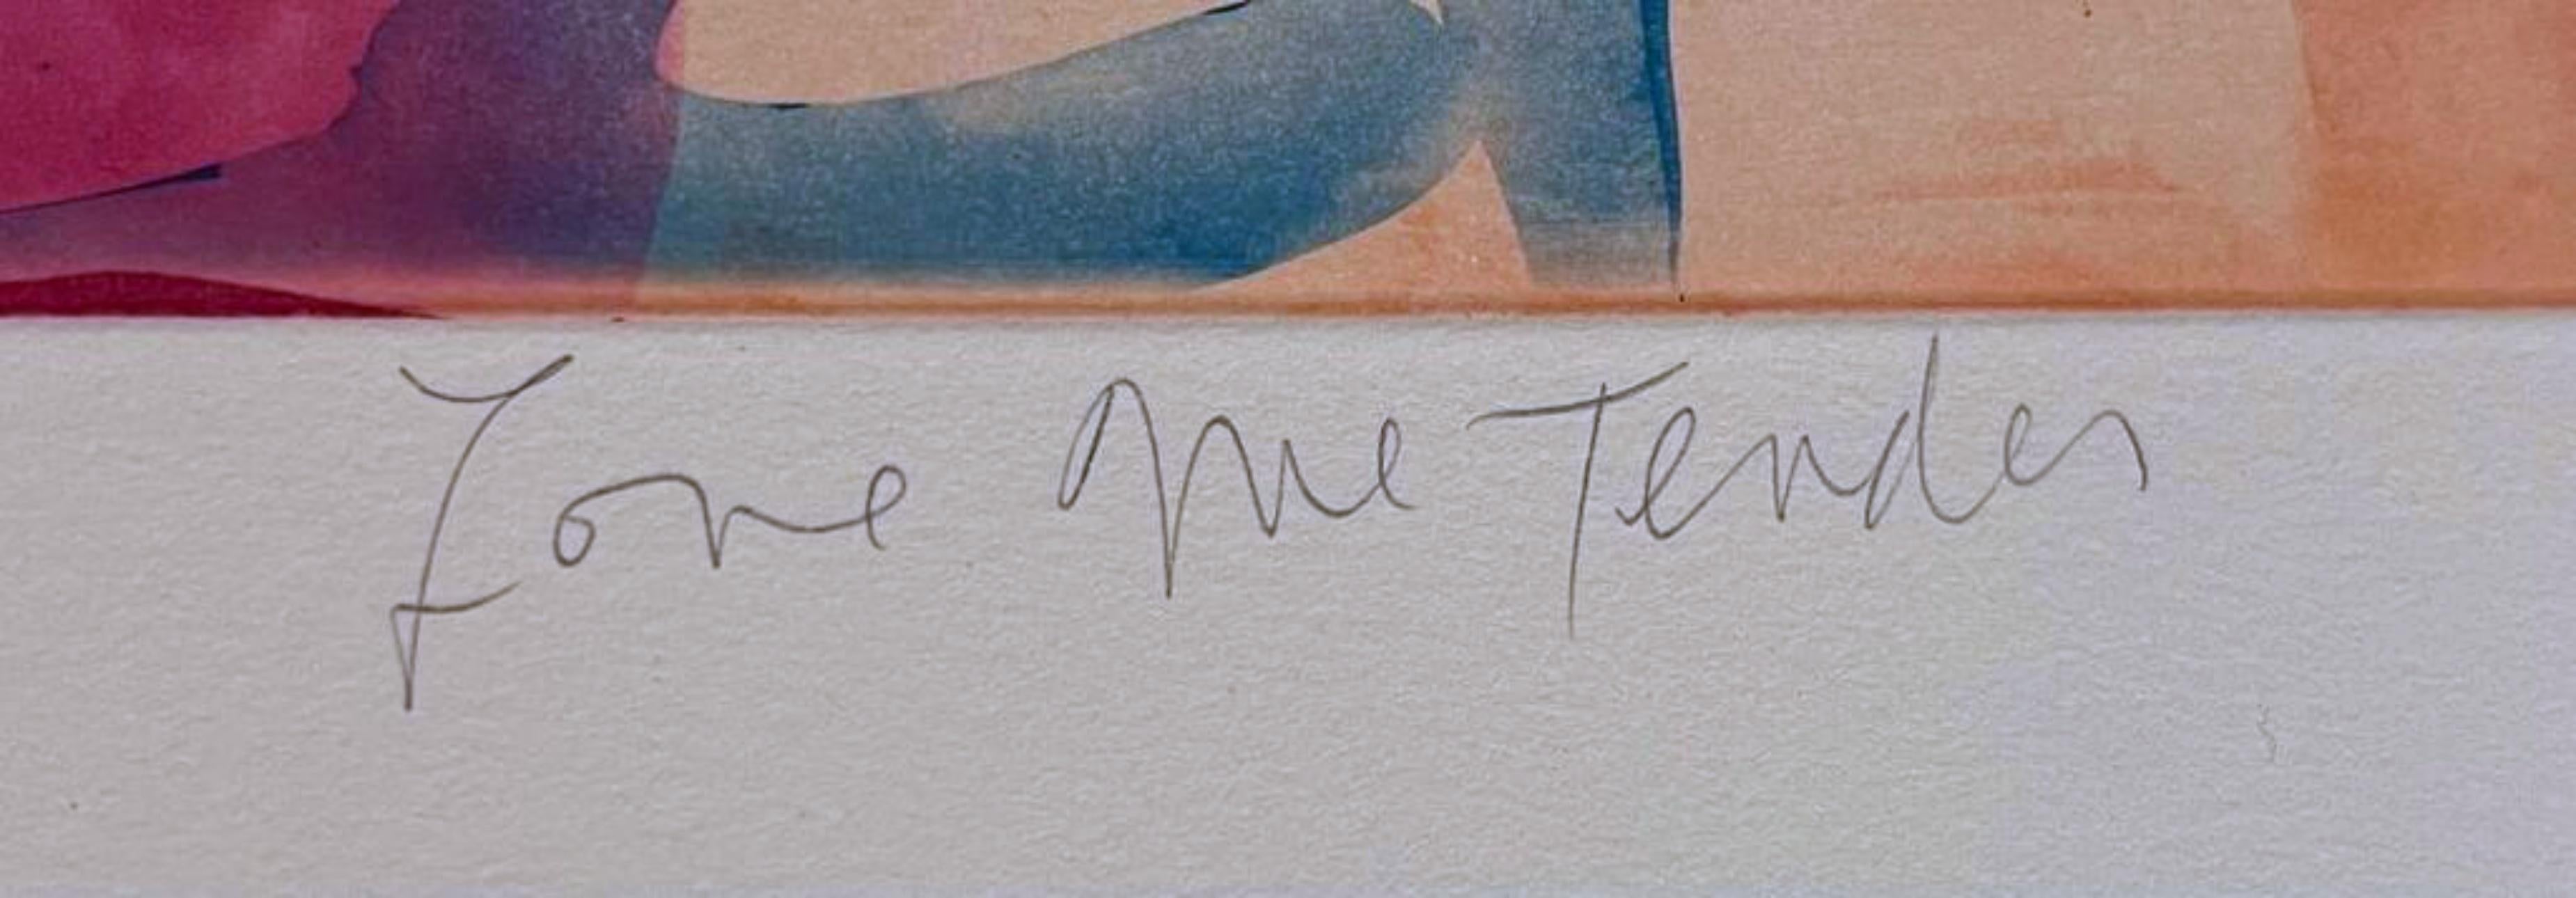 Meyer
Liebe mich zärtlich, 2003
Farbradierung auf Velinpapier
Auf der Vorderseite mit Bleistift signiert und nummeriert aus einer Auflage von 30 Stück
27 Zoll × 25 Zoll
Auflage EP 2/3: Mit Bleistift signiert und nummeriert EP 2/3, neben der